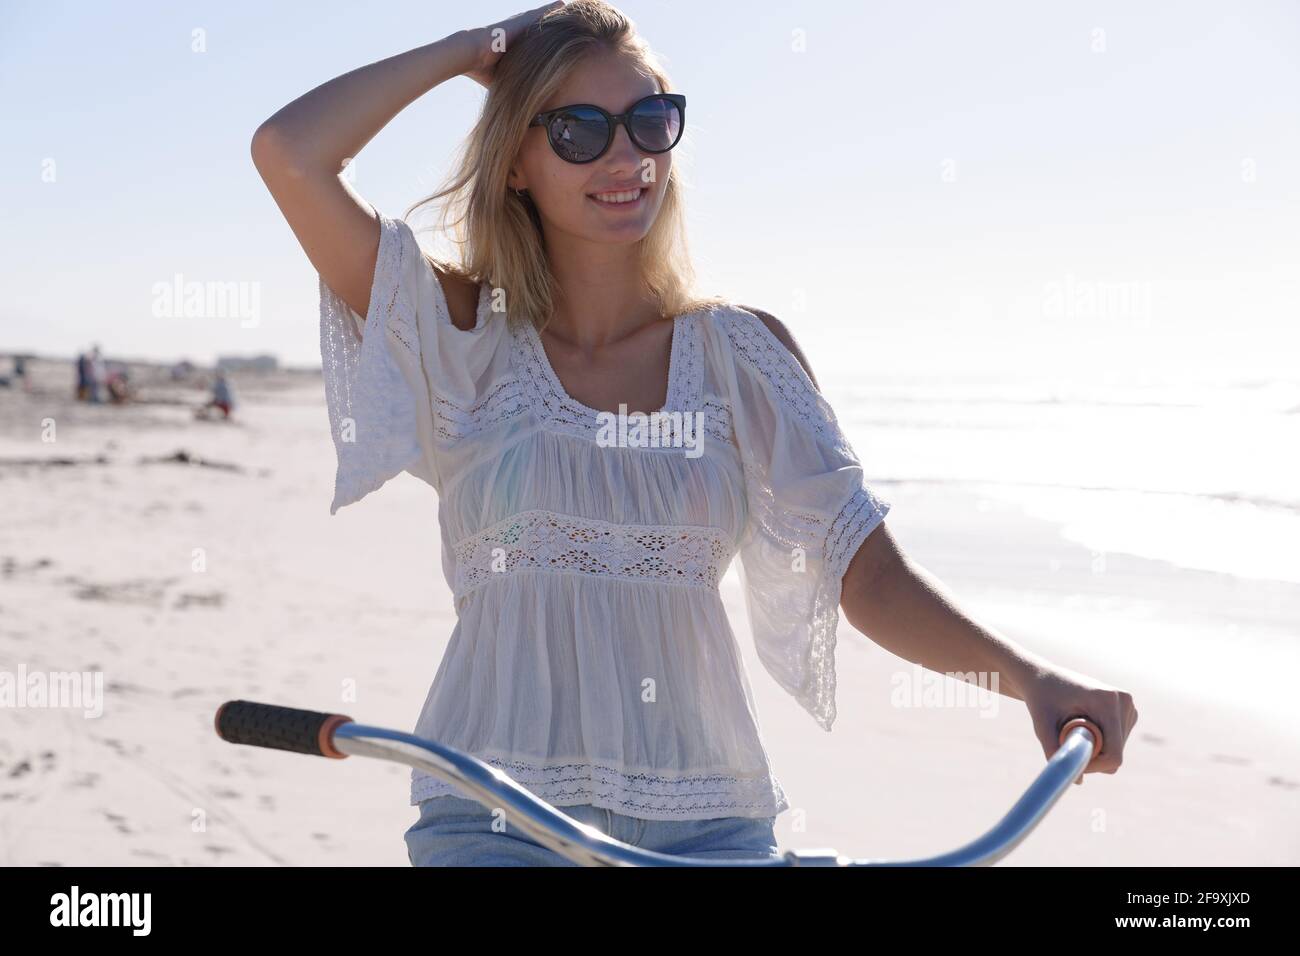 Lächelnde kaukasische Frau mit Sonnenbrille, weißem Oberteil und Shorts, die am Strand auf dem Fahrrad sitzt Stockfoto